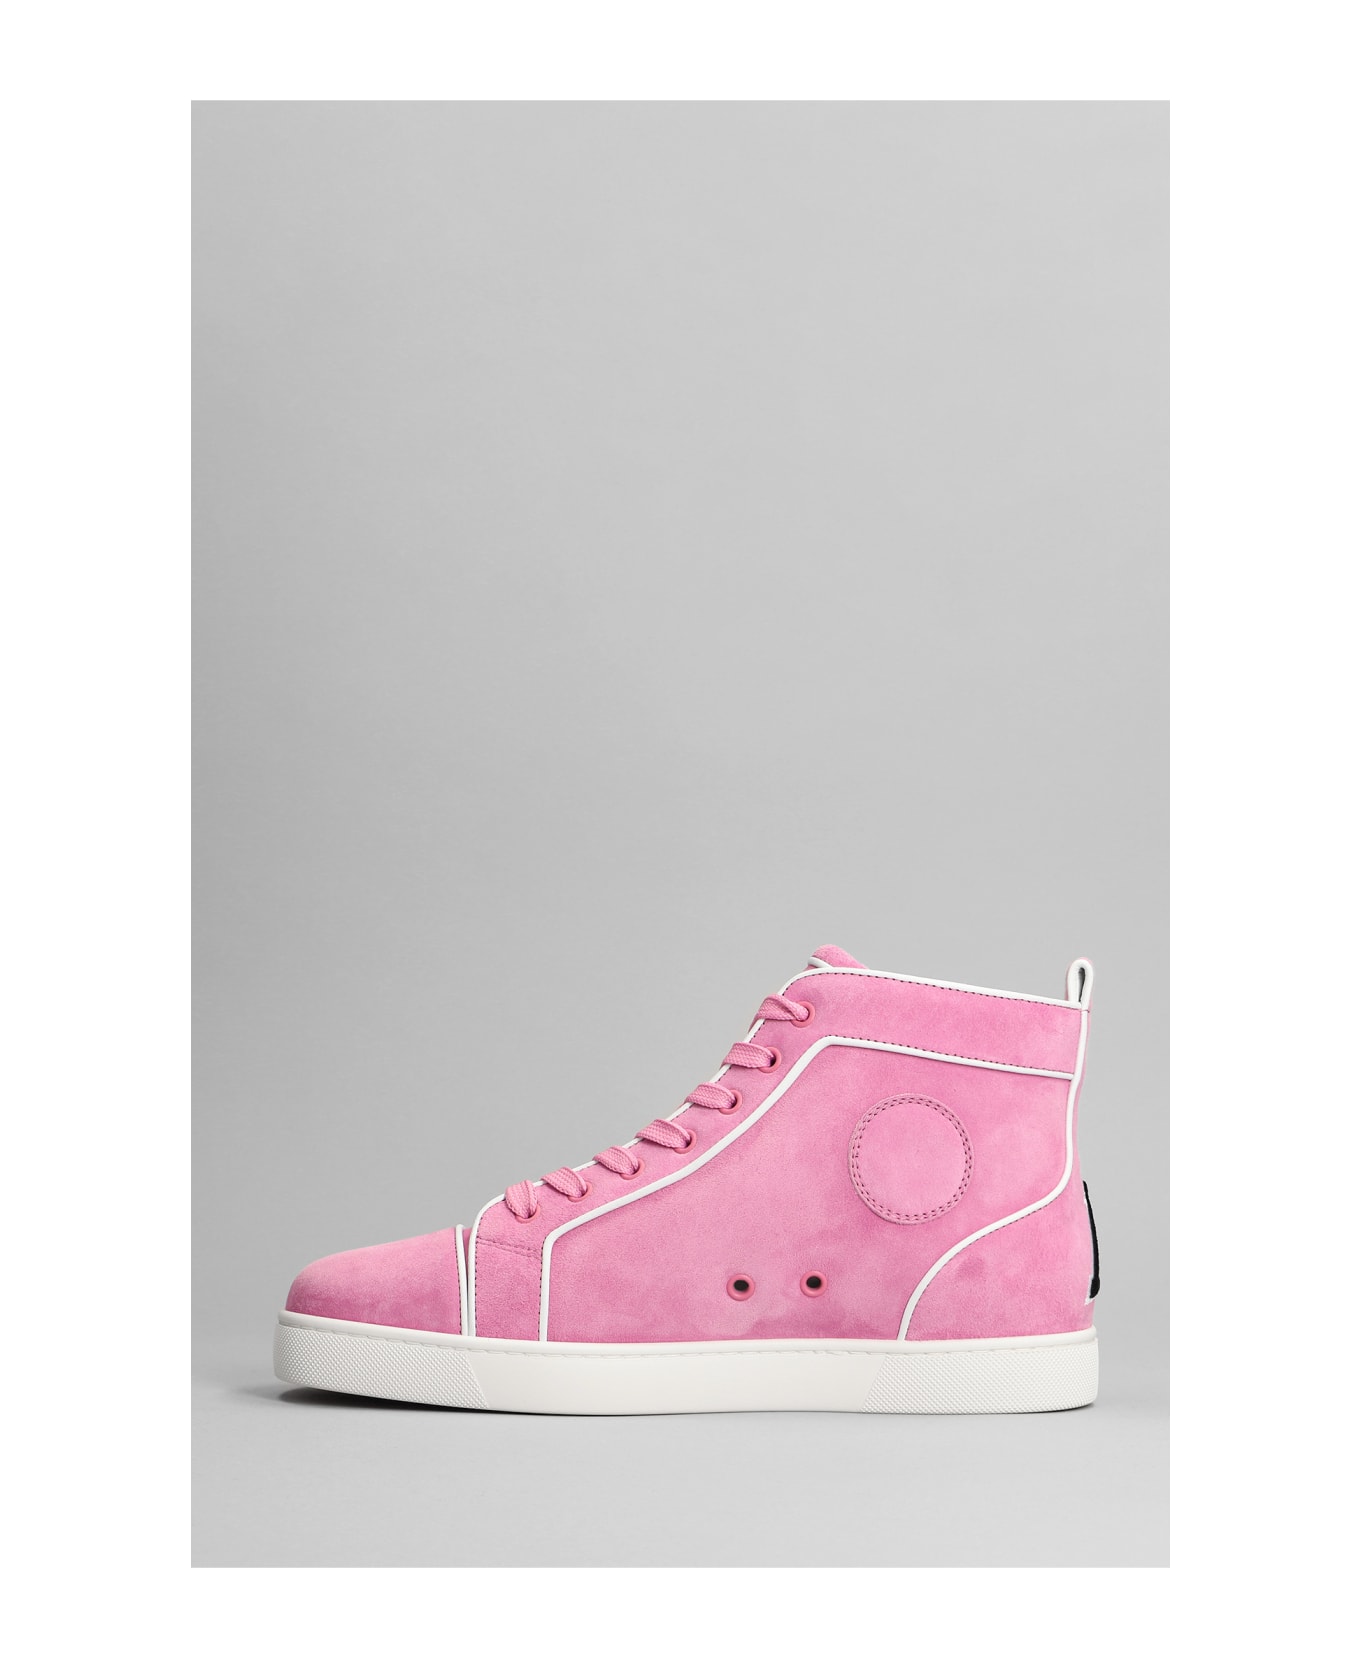 Christian Louboutin Varsilouis Flat Sneakers In Rose-pink Suede - rose-pink